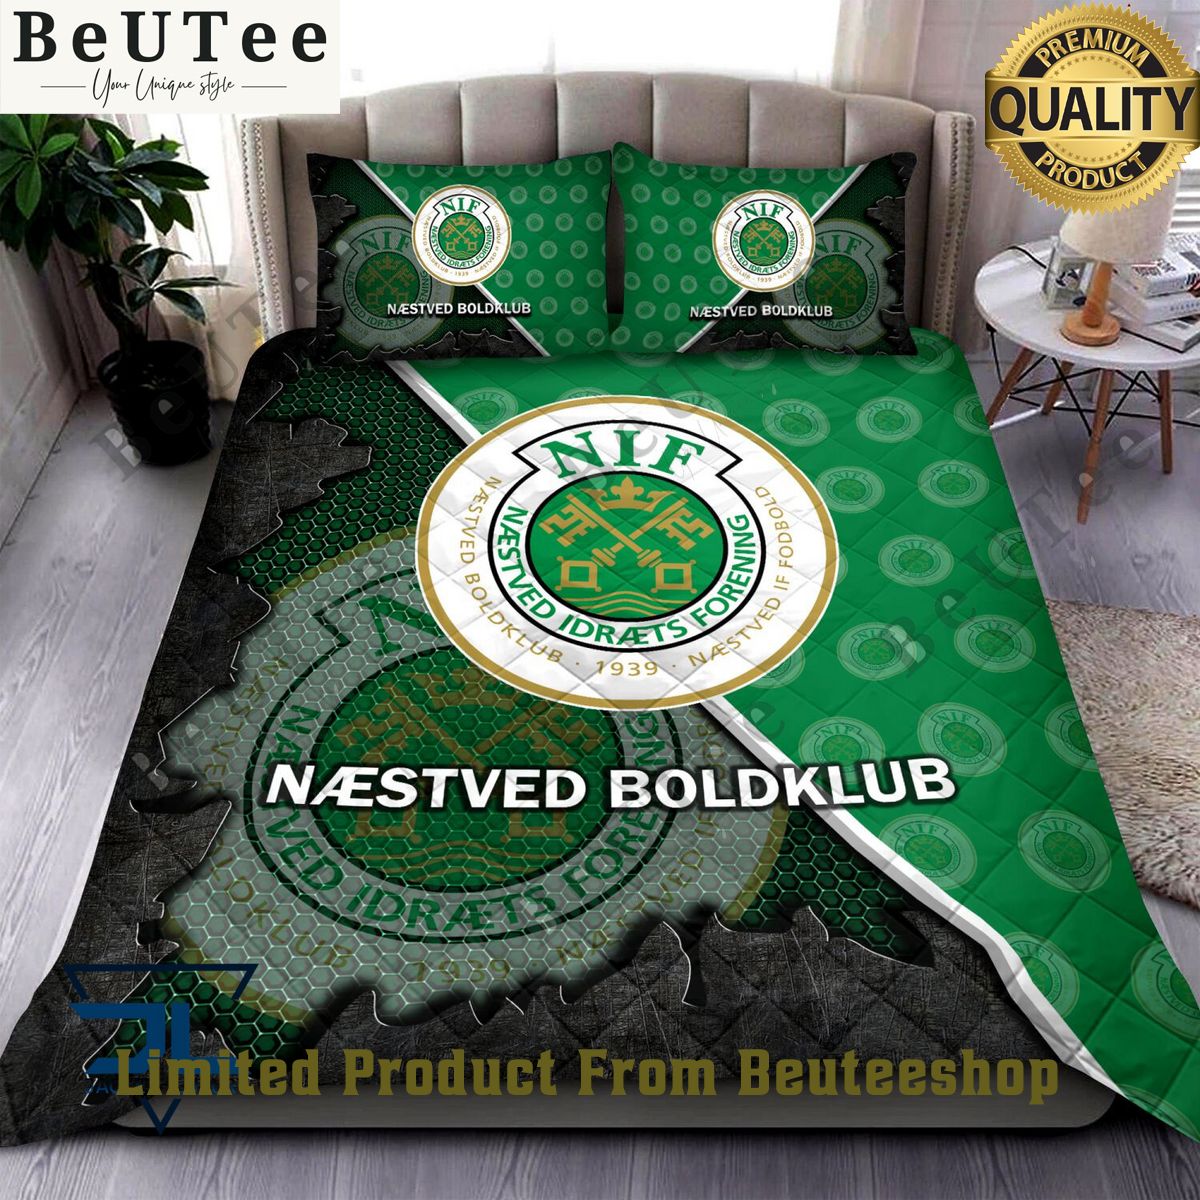 nestved boldklub superliga quilt broken bedding set 1 Q0UnO.jpg